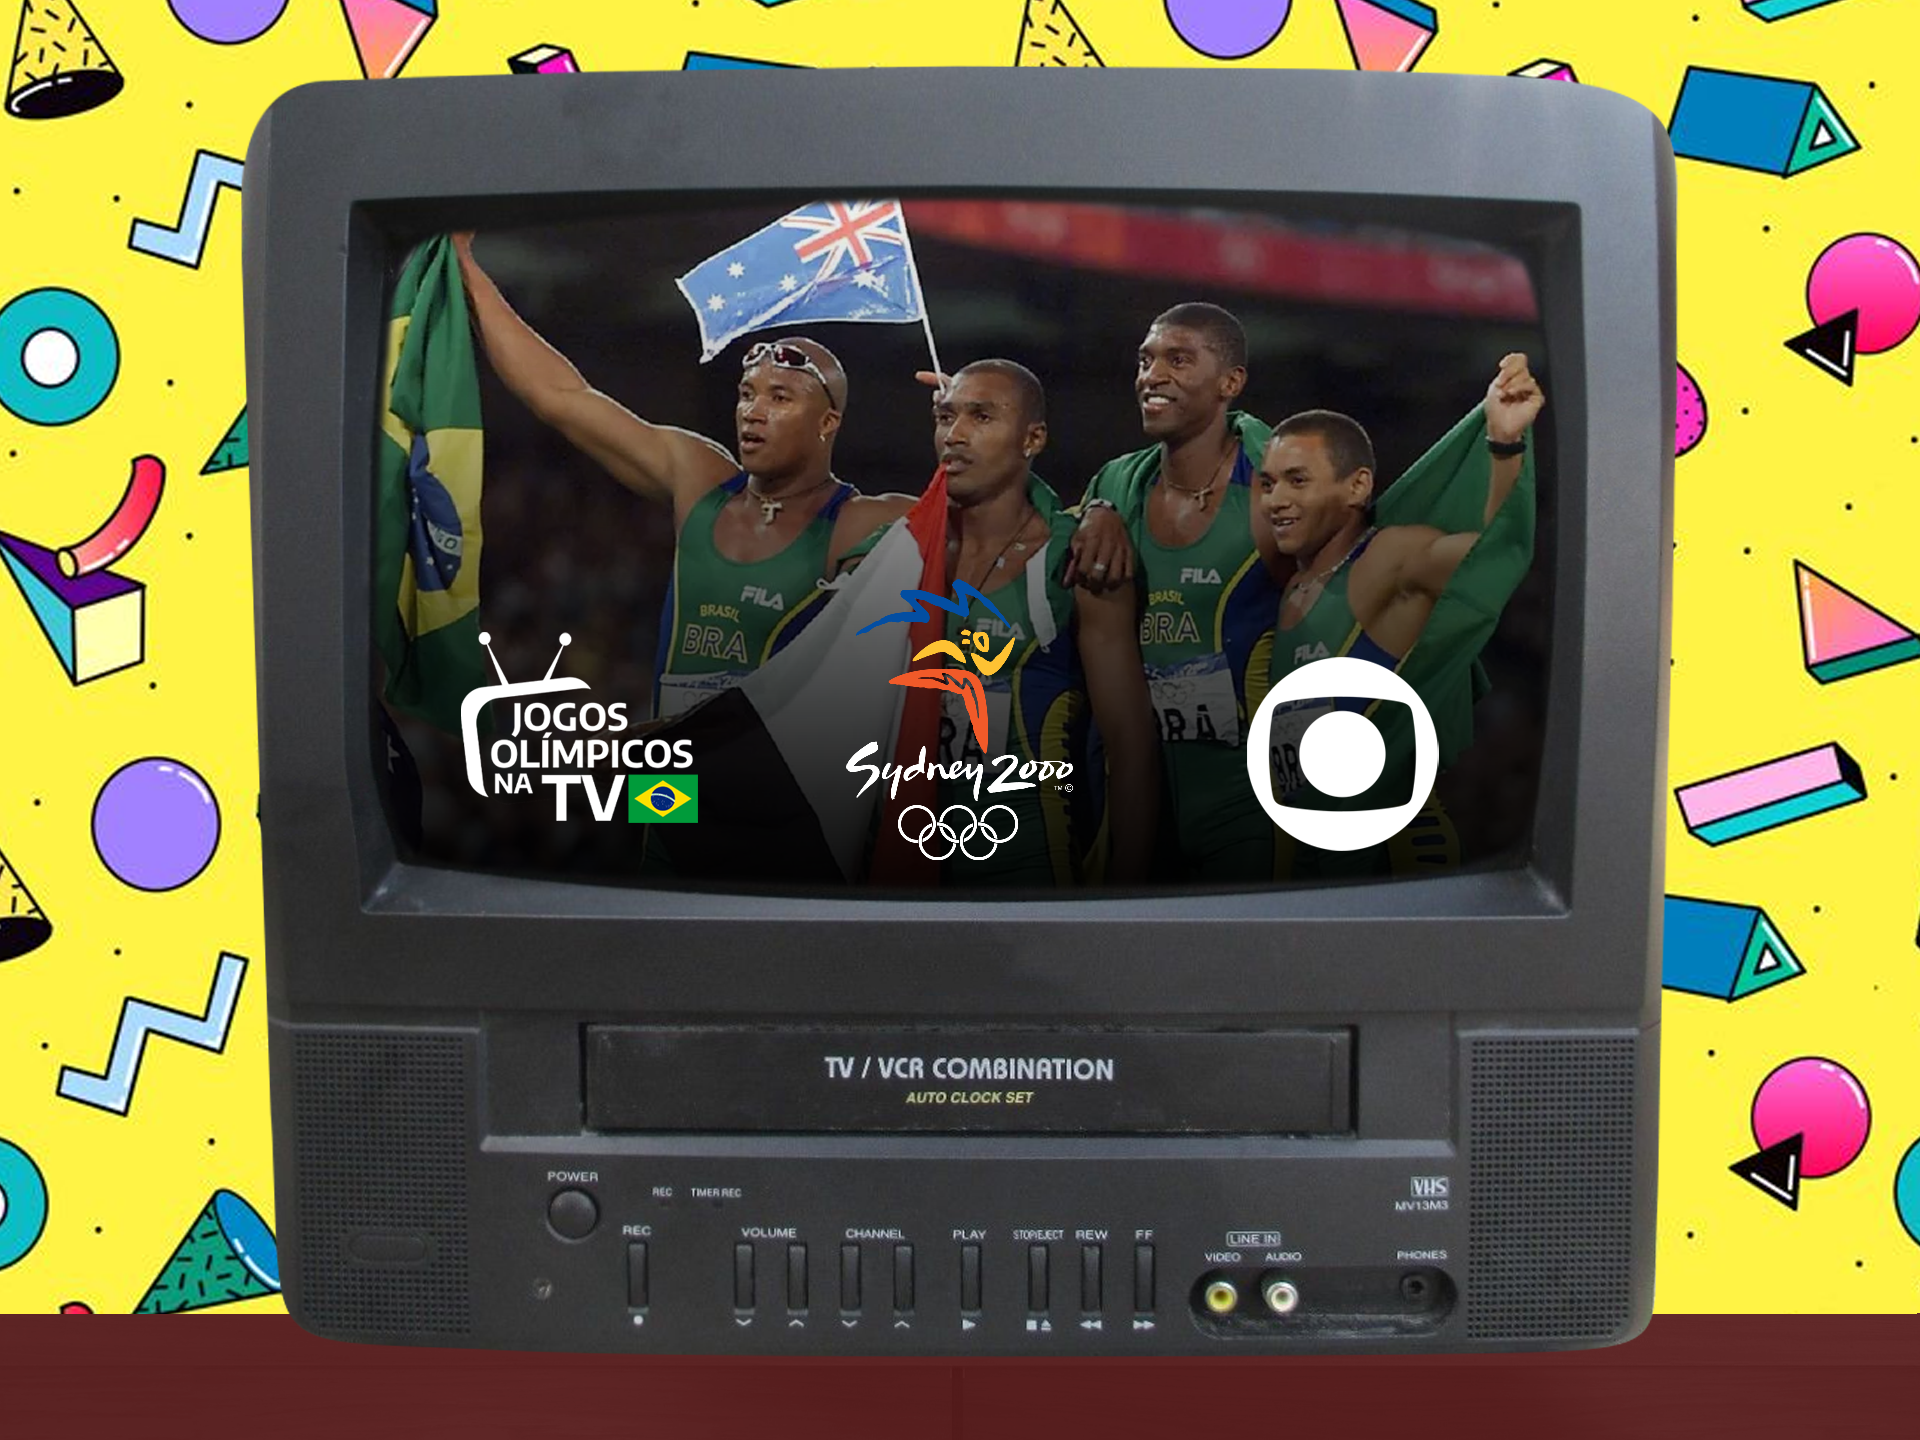 RE:Zero, hoje às 20h na - Rede Brasil de Televisão